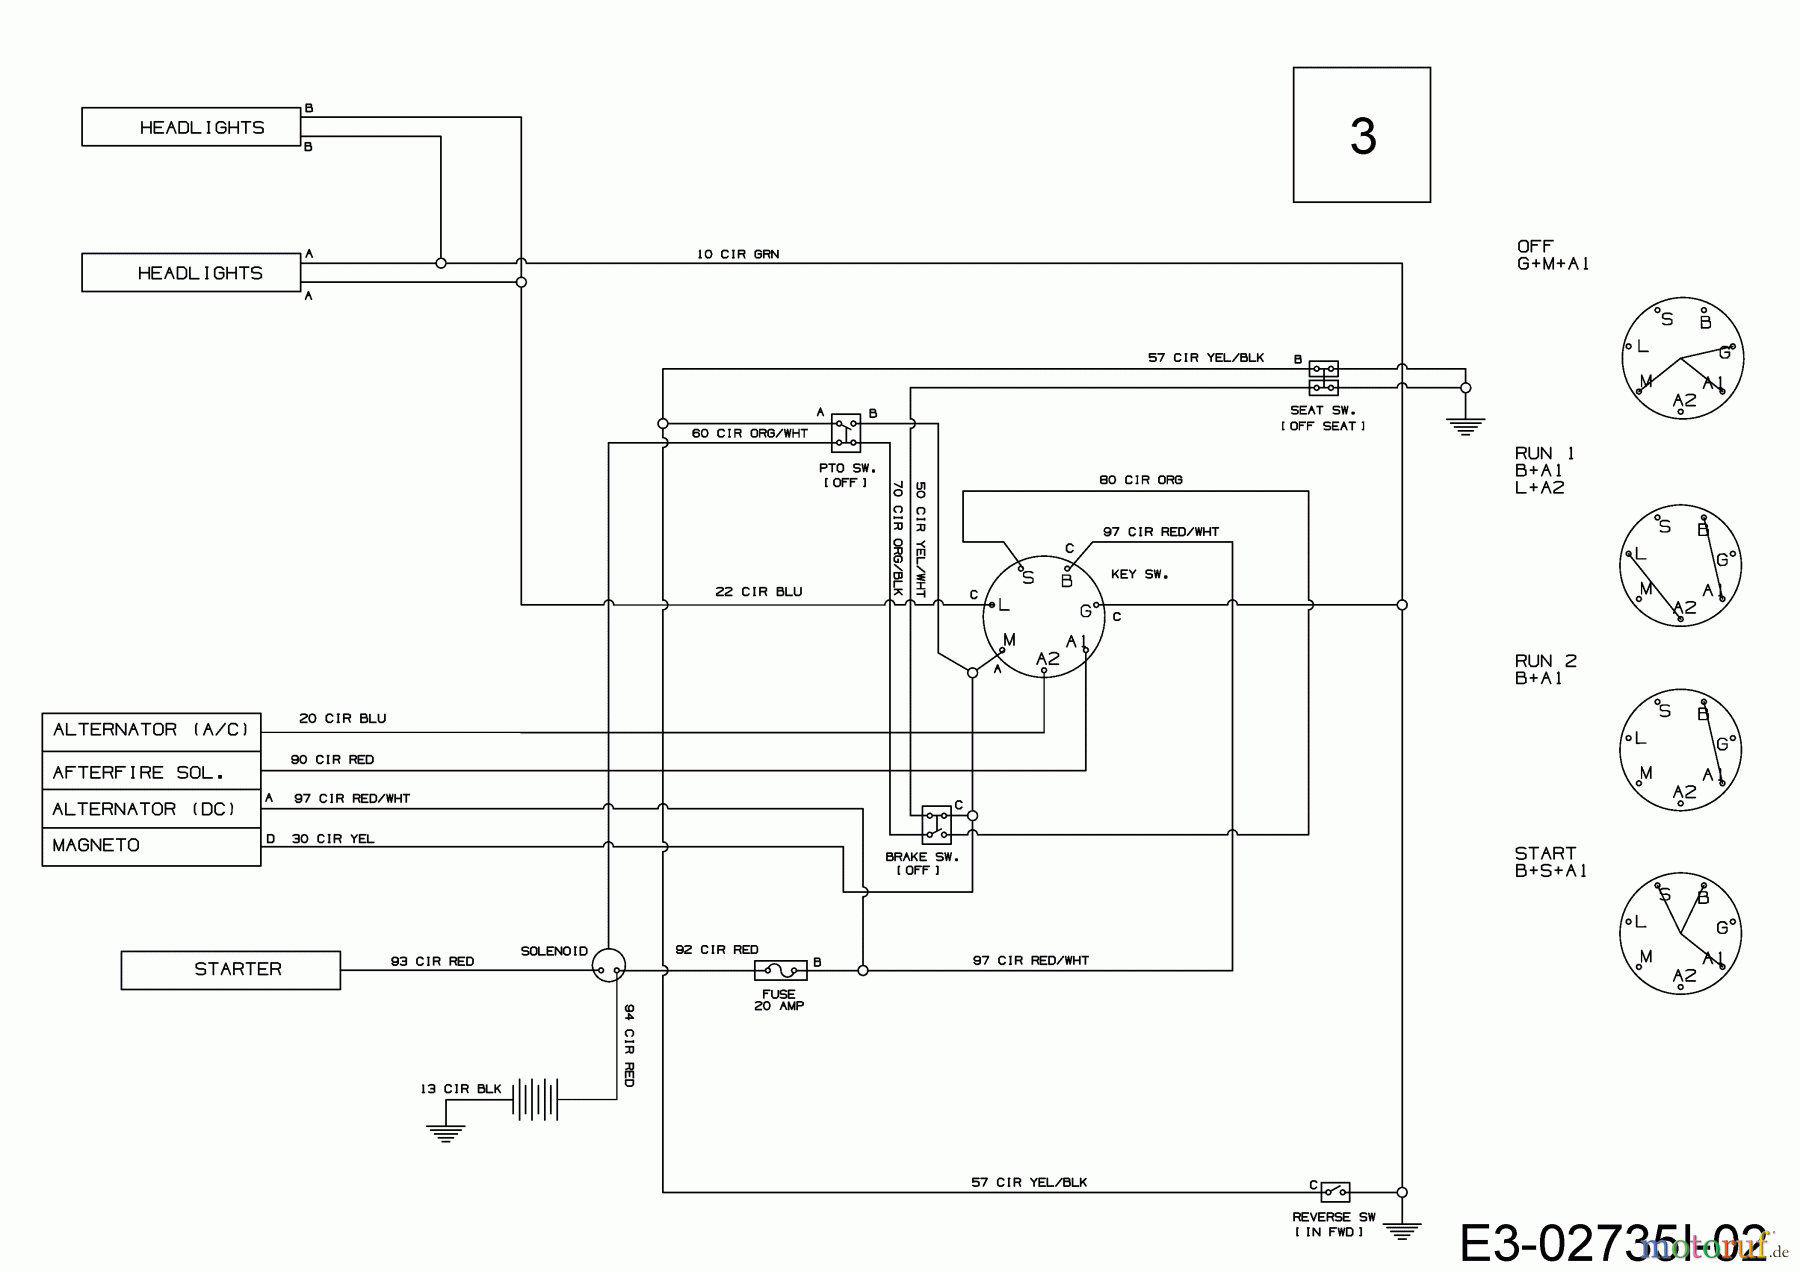  Bricolage Lawn tractors INV A13096 LB 13AH76SF648 (2019) Wiring diagram